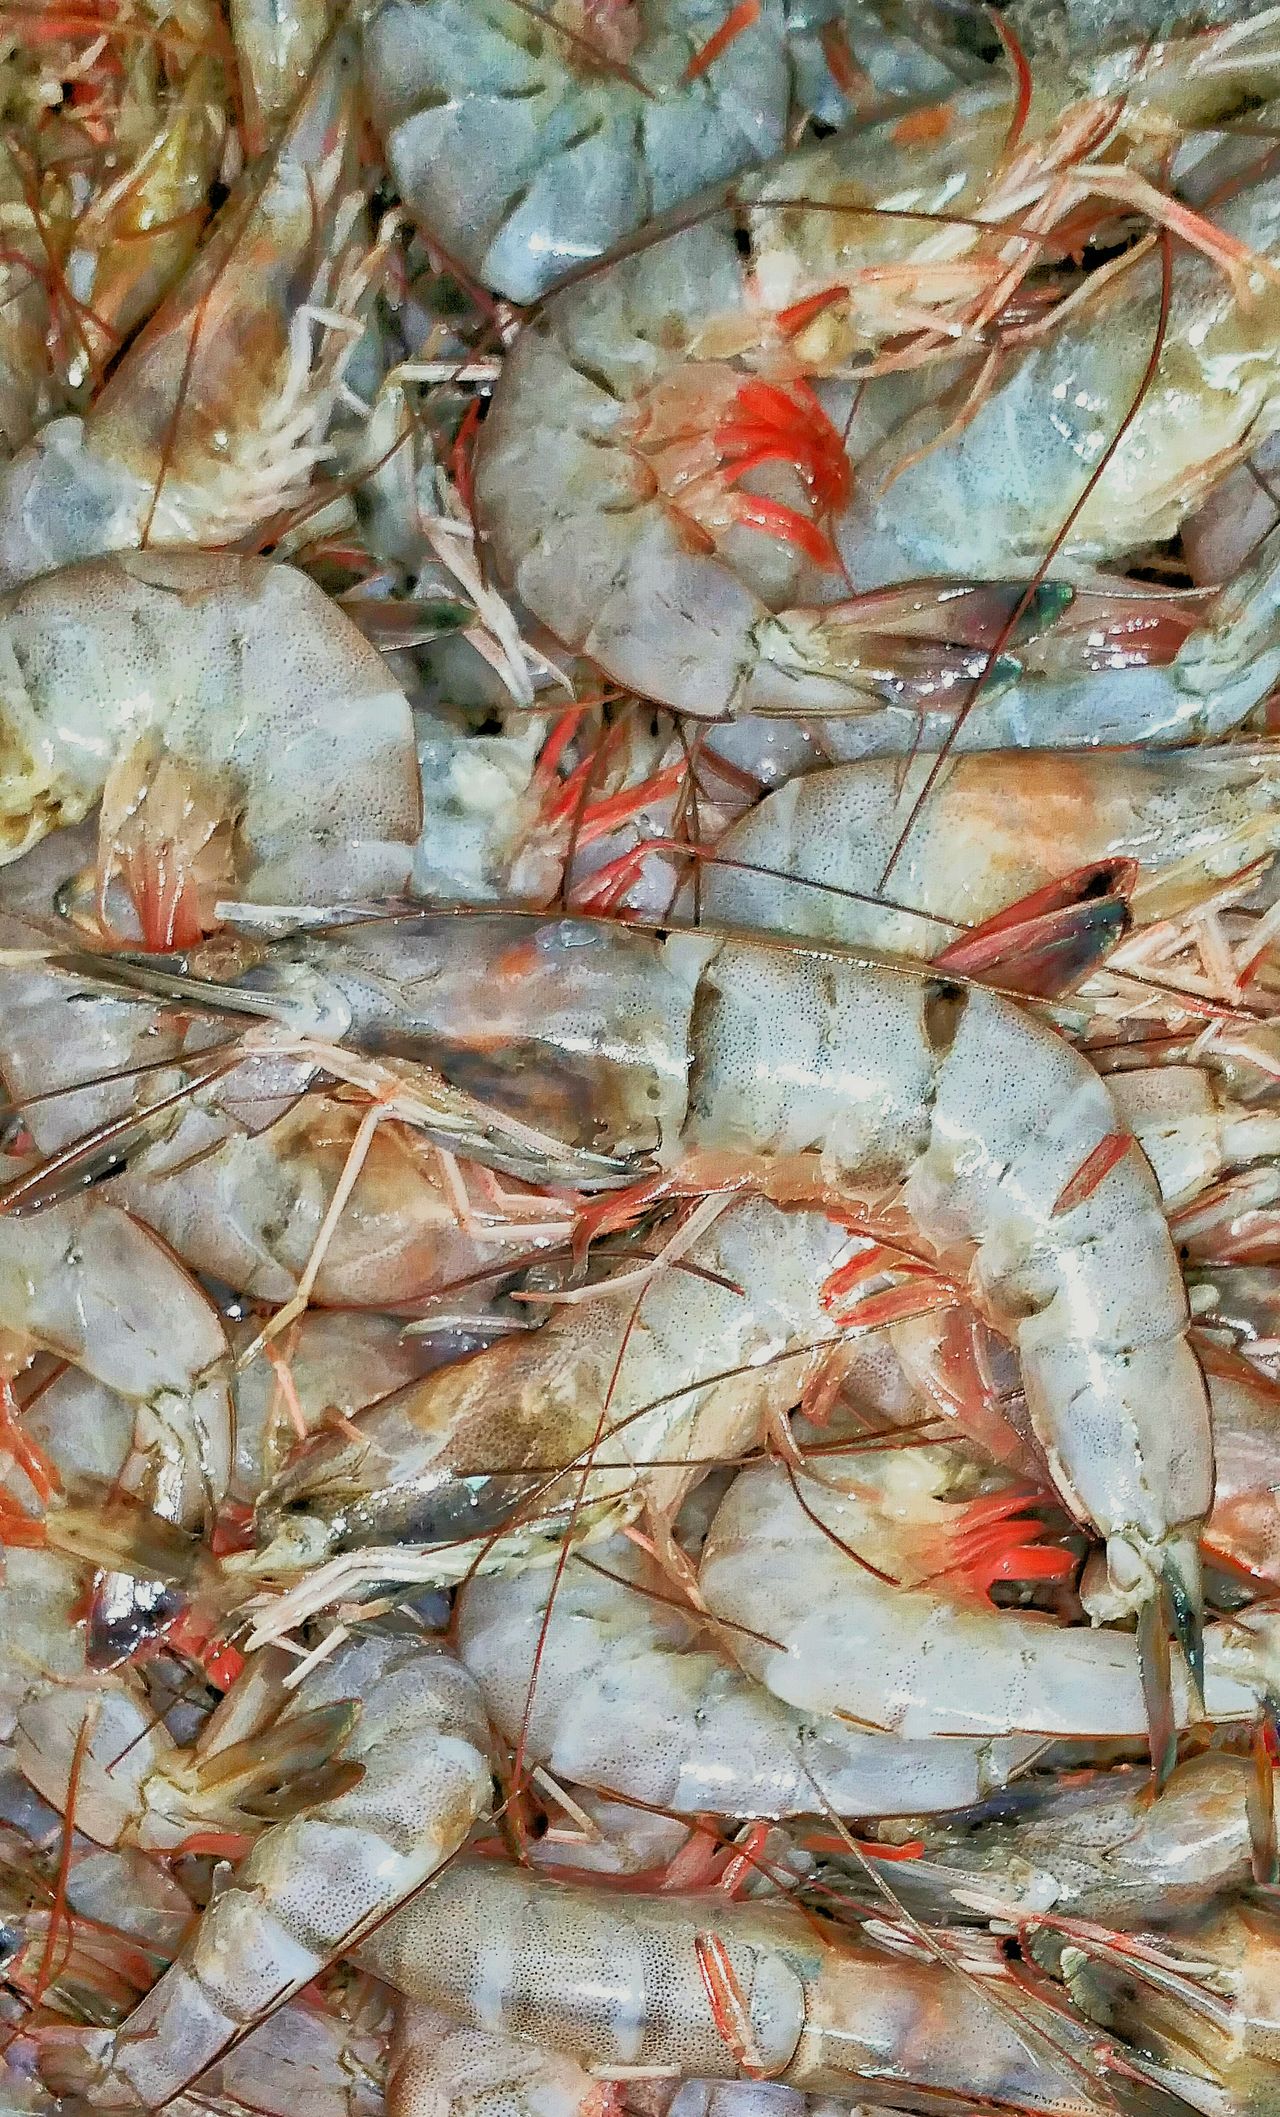 Gulf of Mexico shrimp